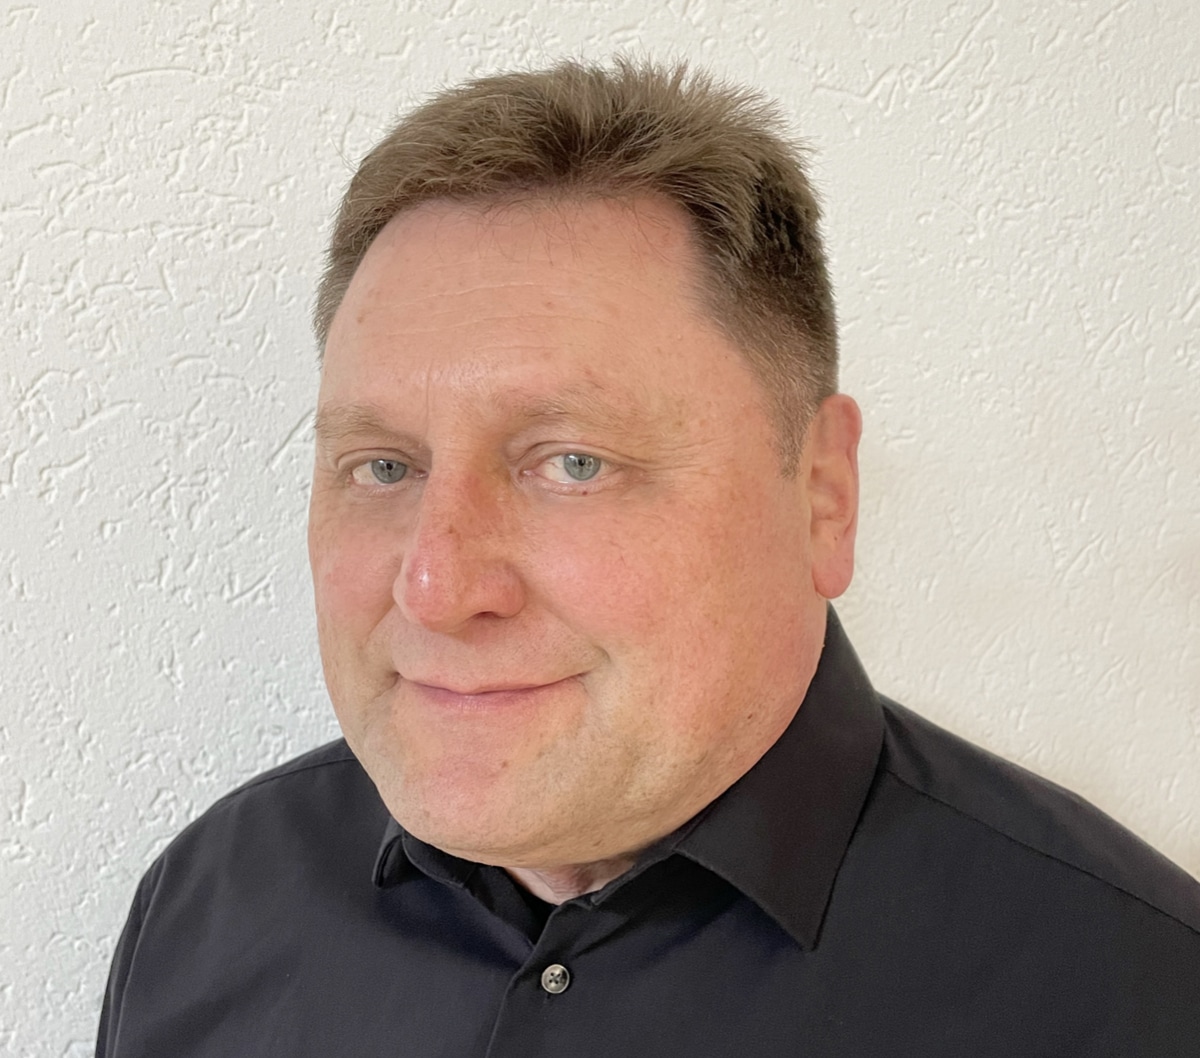 Herbert Gelber ist der neue Geschäftsführer der Vegra GmbH.